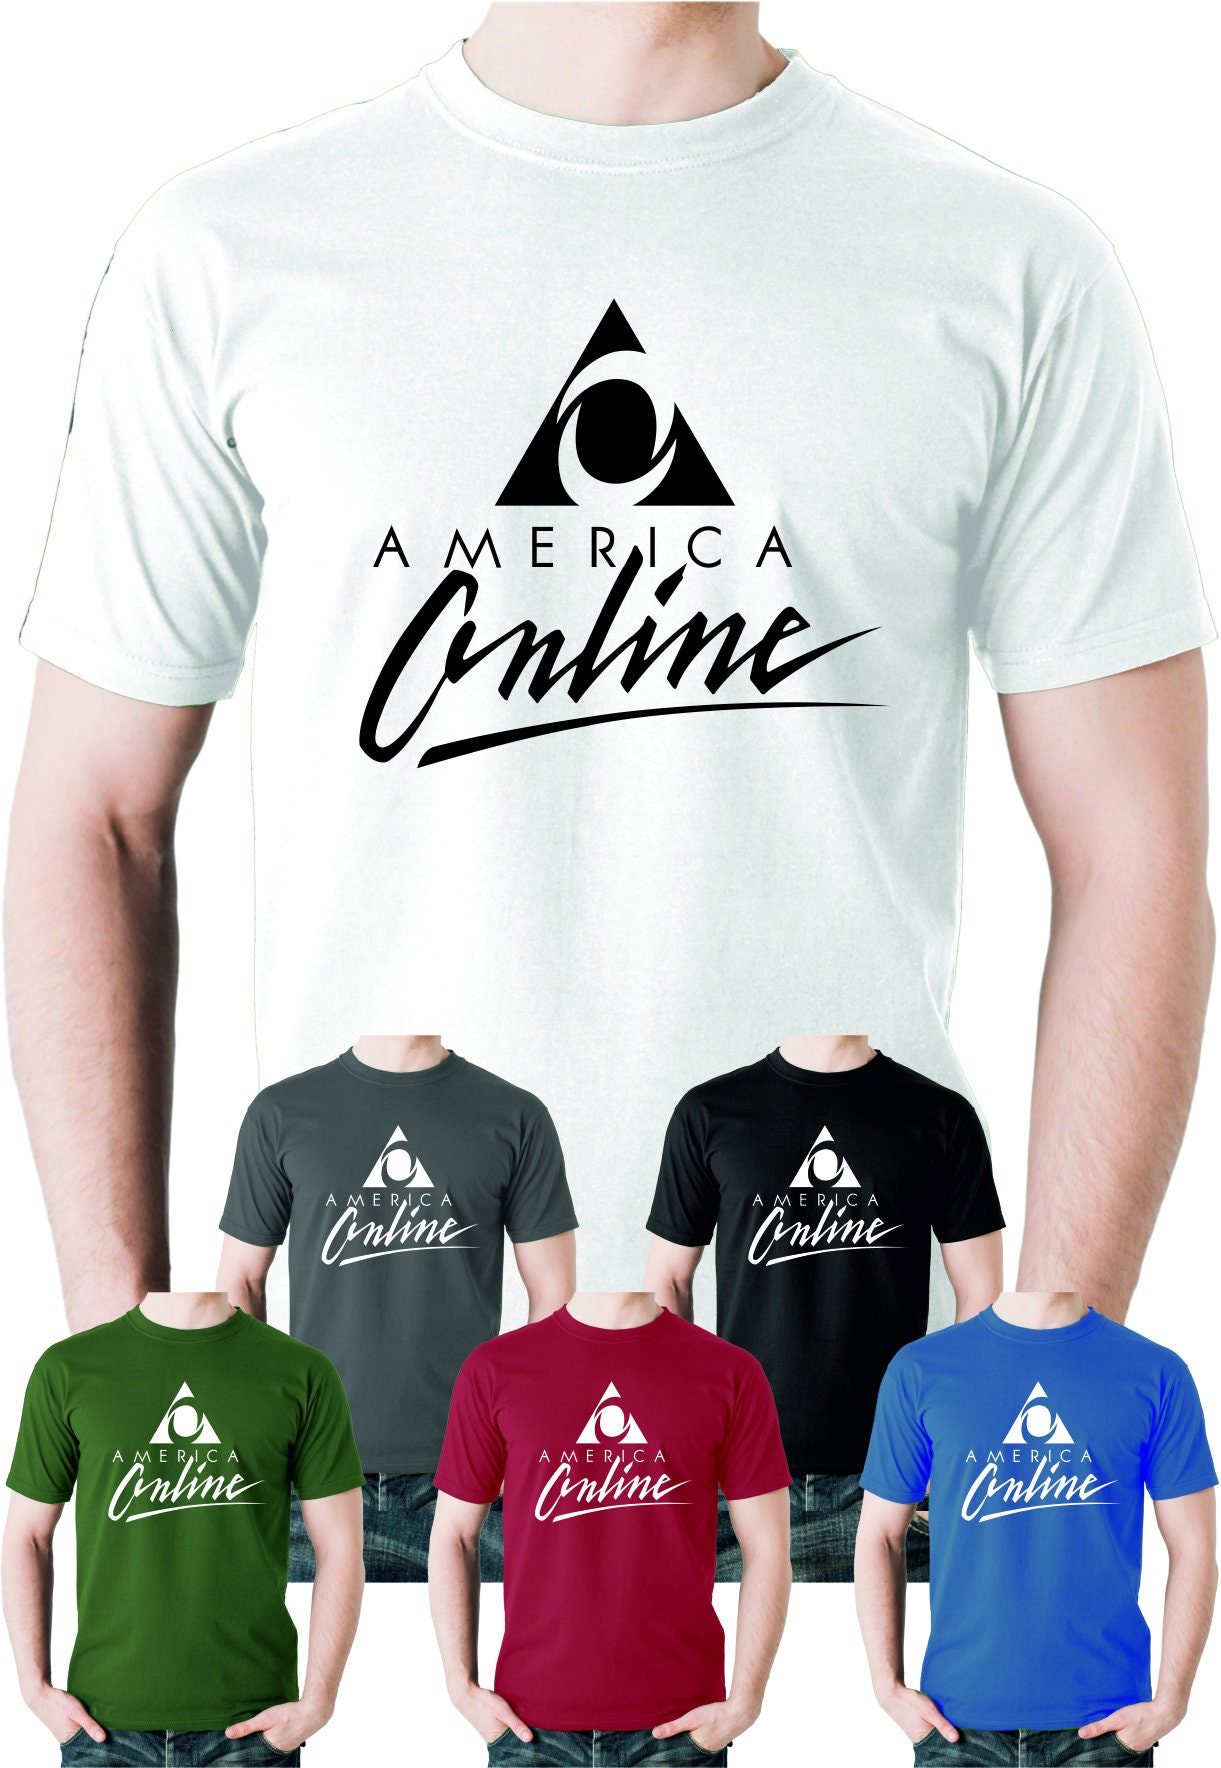 America Online Shirt Etsy